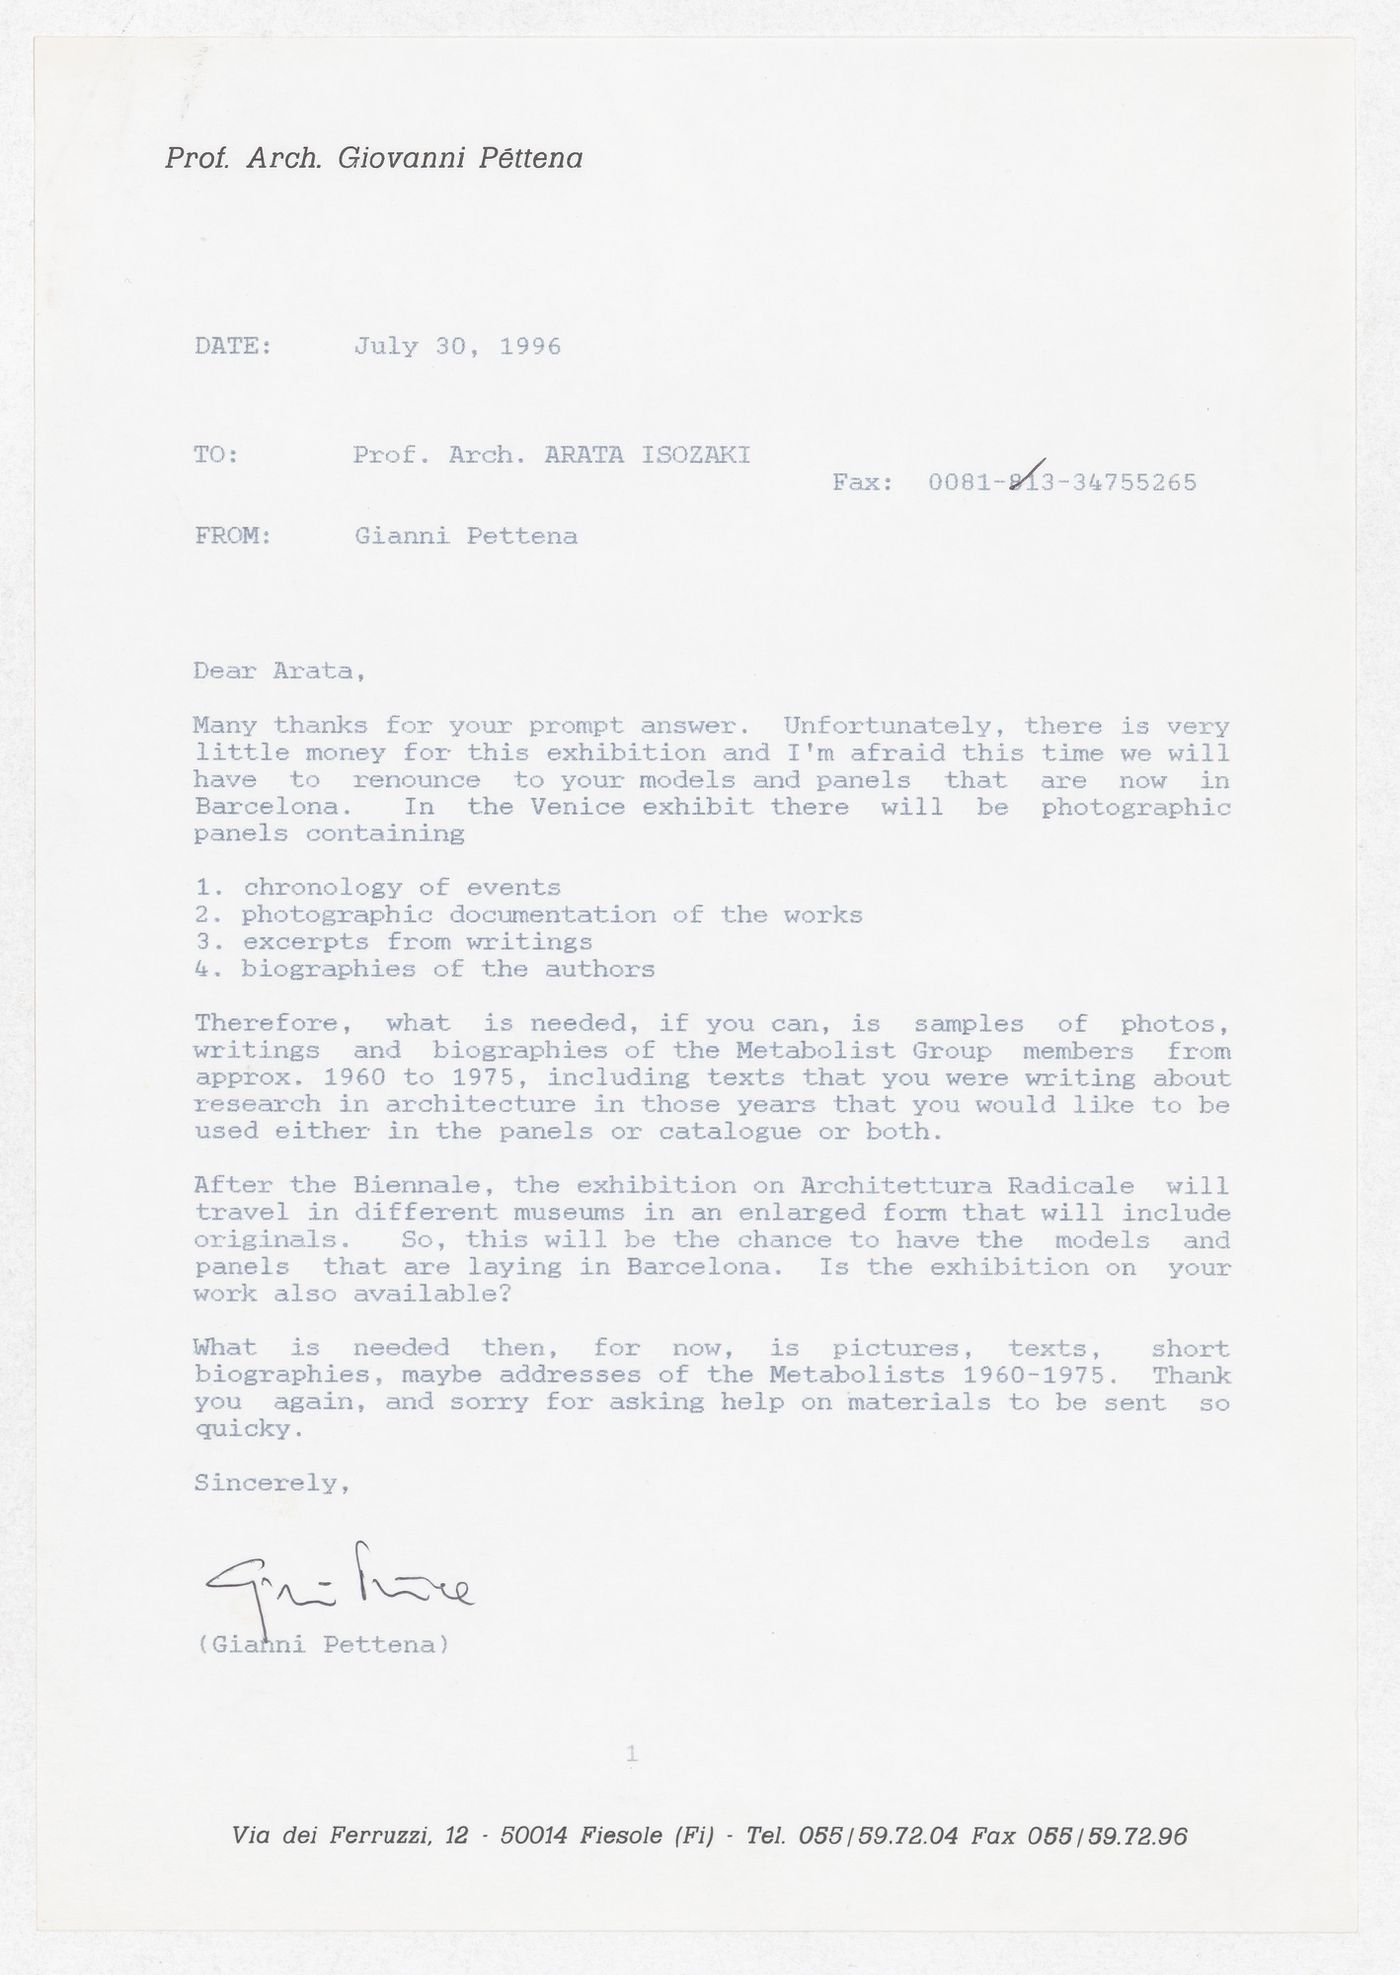 Correspondence to Arata Isozaki regarding the exhibition Radicals. Architecttura e Design 1960-1975